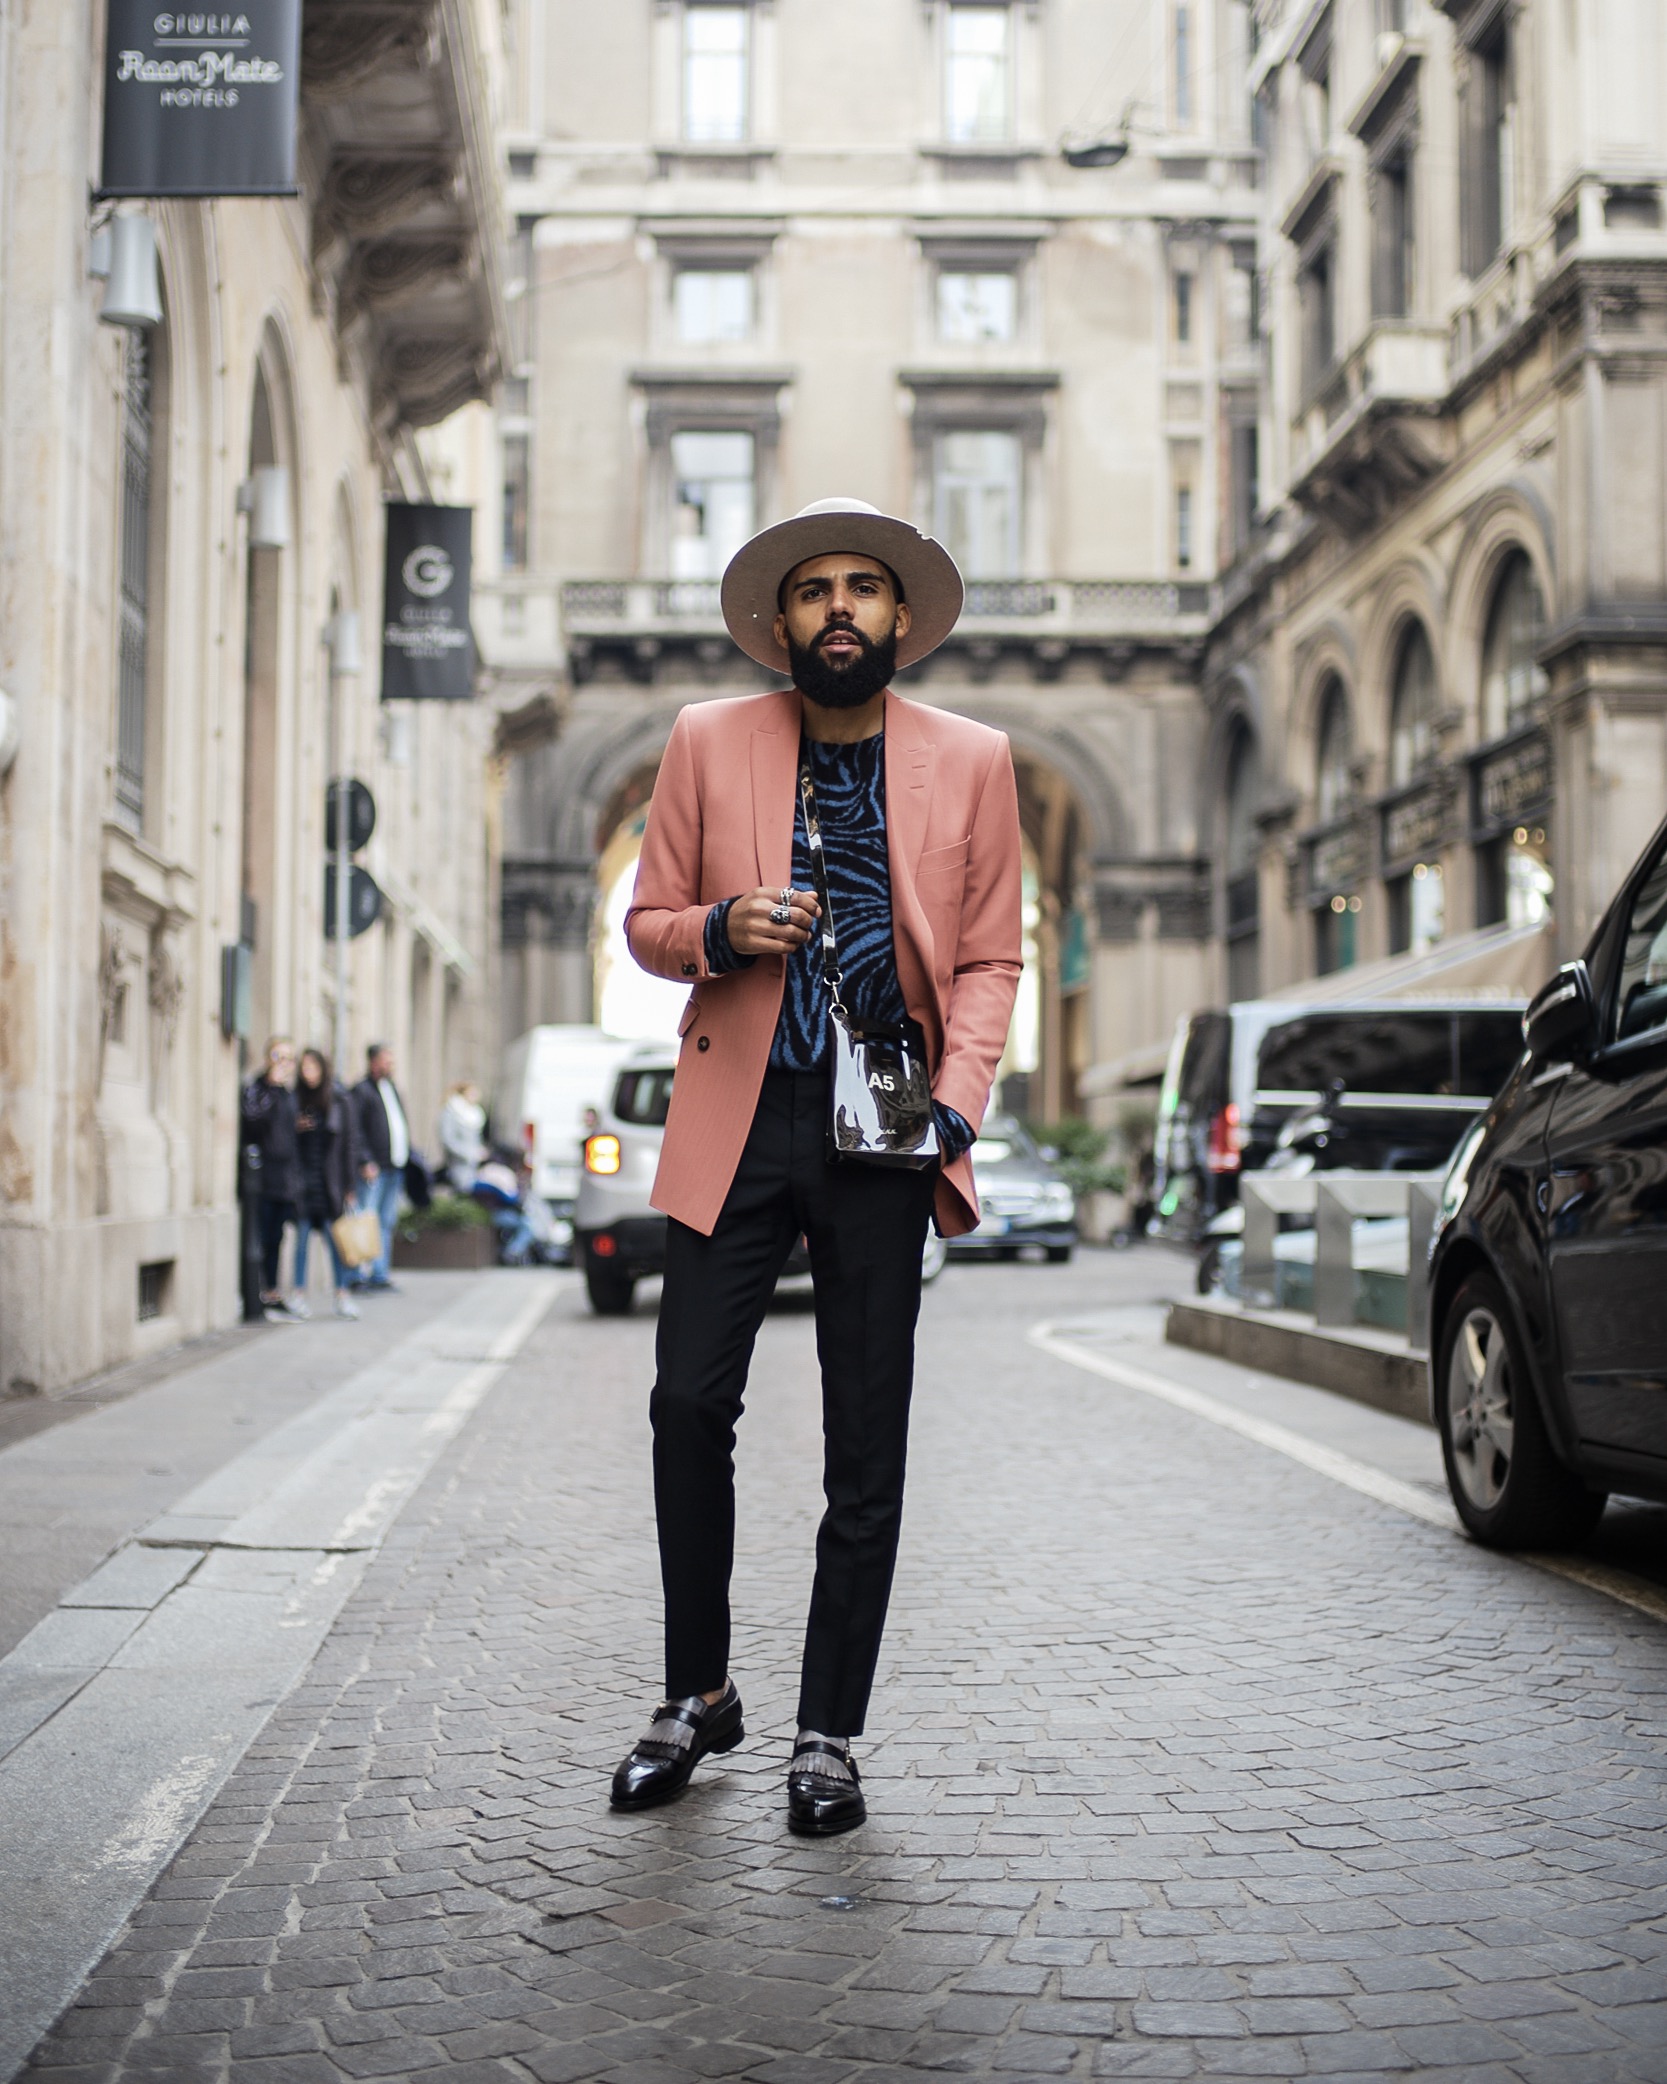 Anzug-Guide: Die zehn Regeln für Männer mit Stil